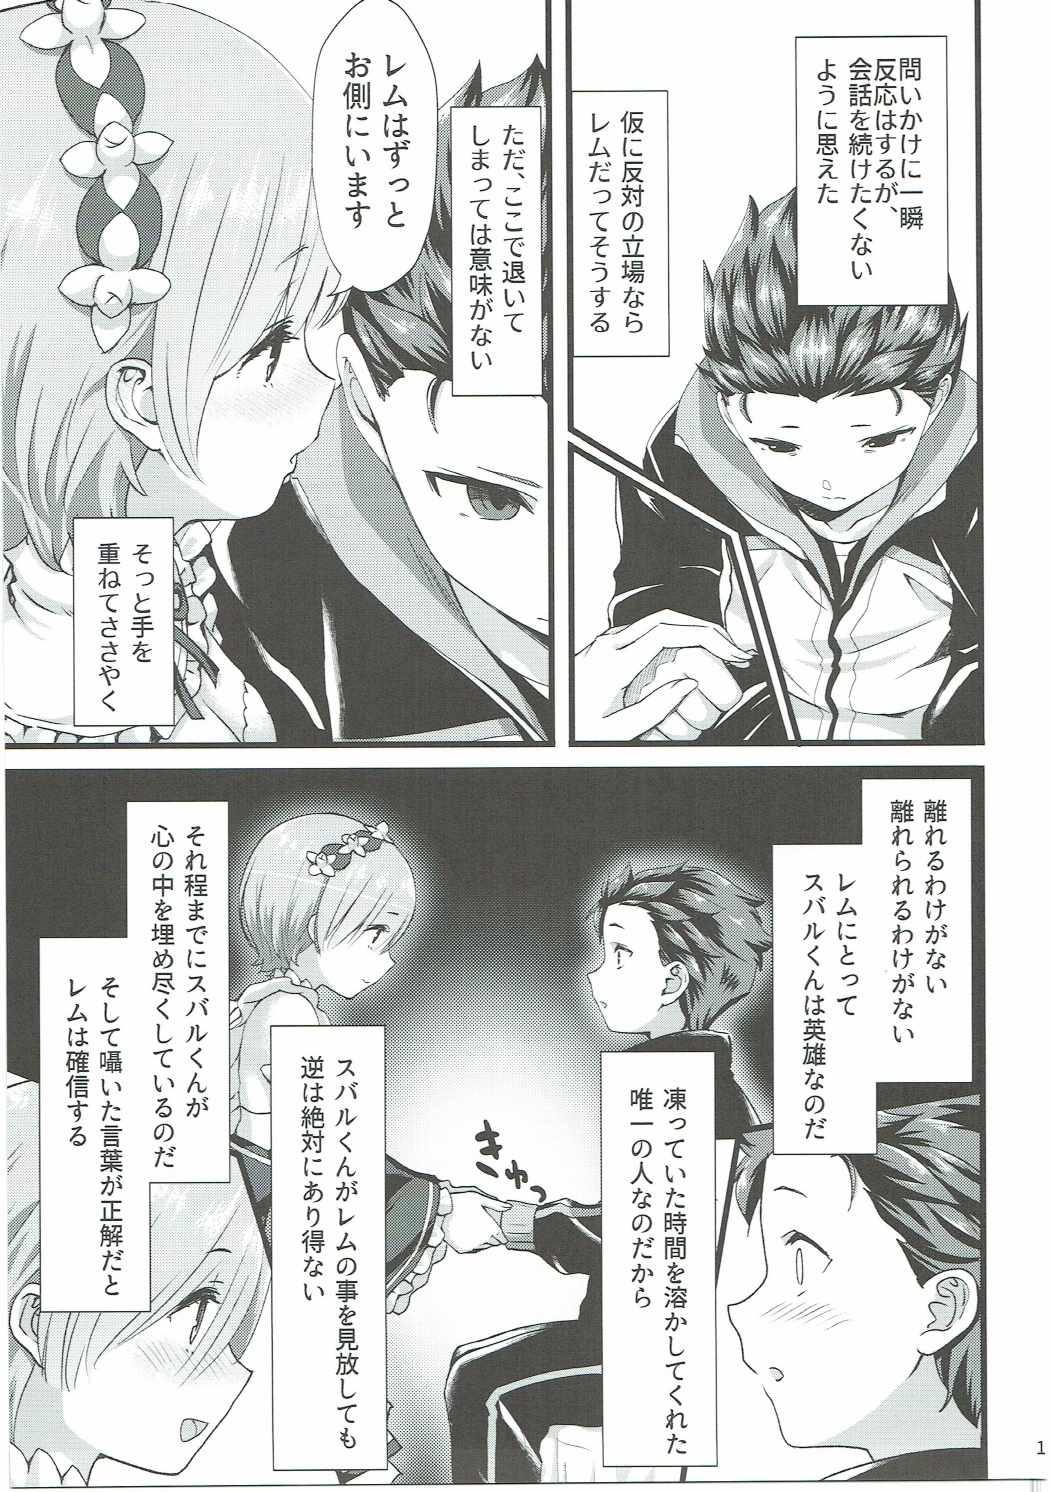 Tetas Grandes Oni no Shoujo - Re zero kara hajimeru isekai seikatsu Pendeja - Page 10